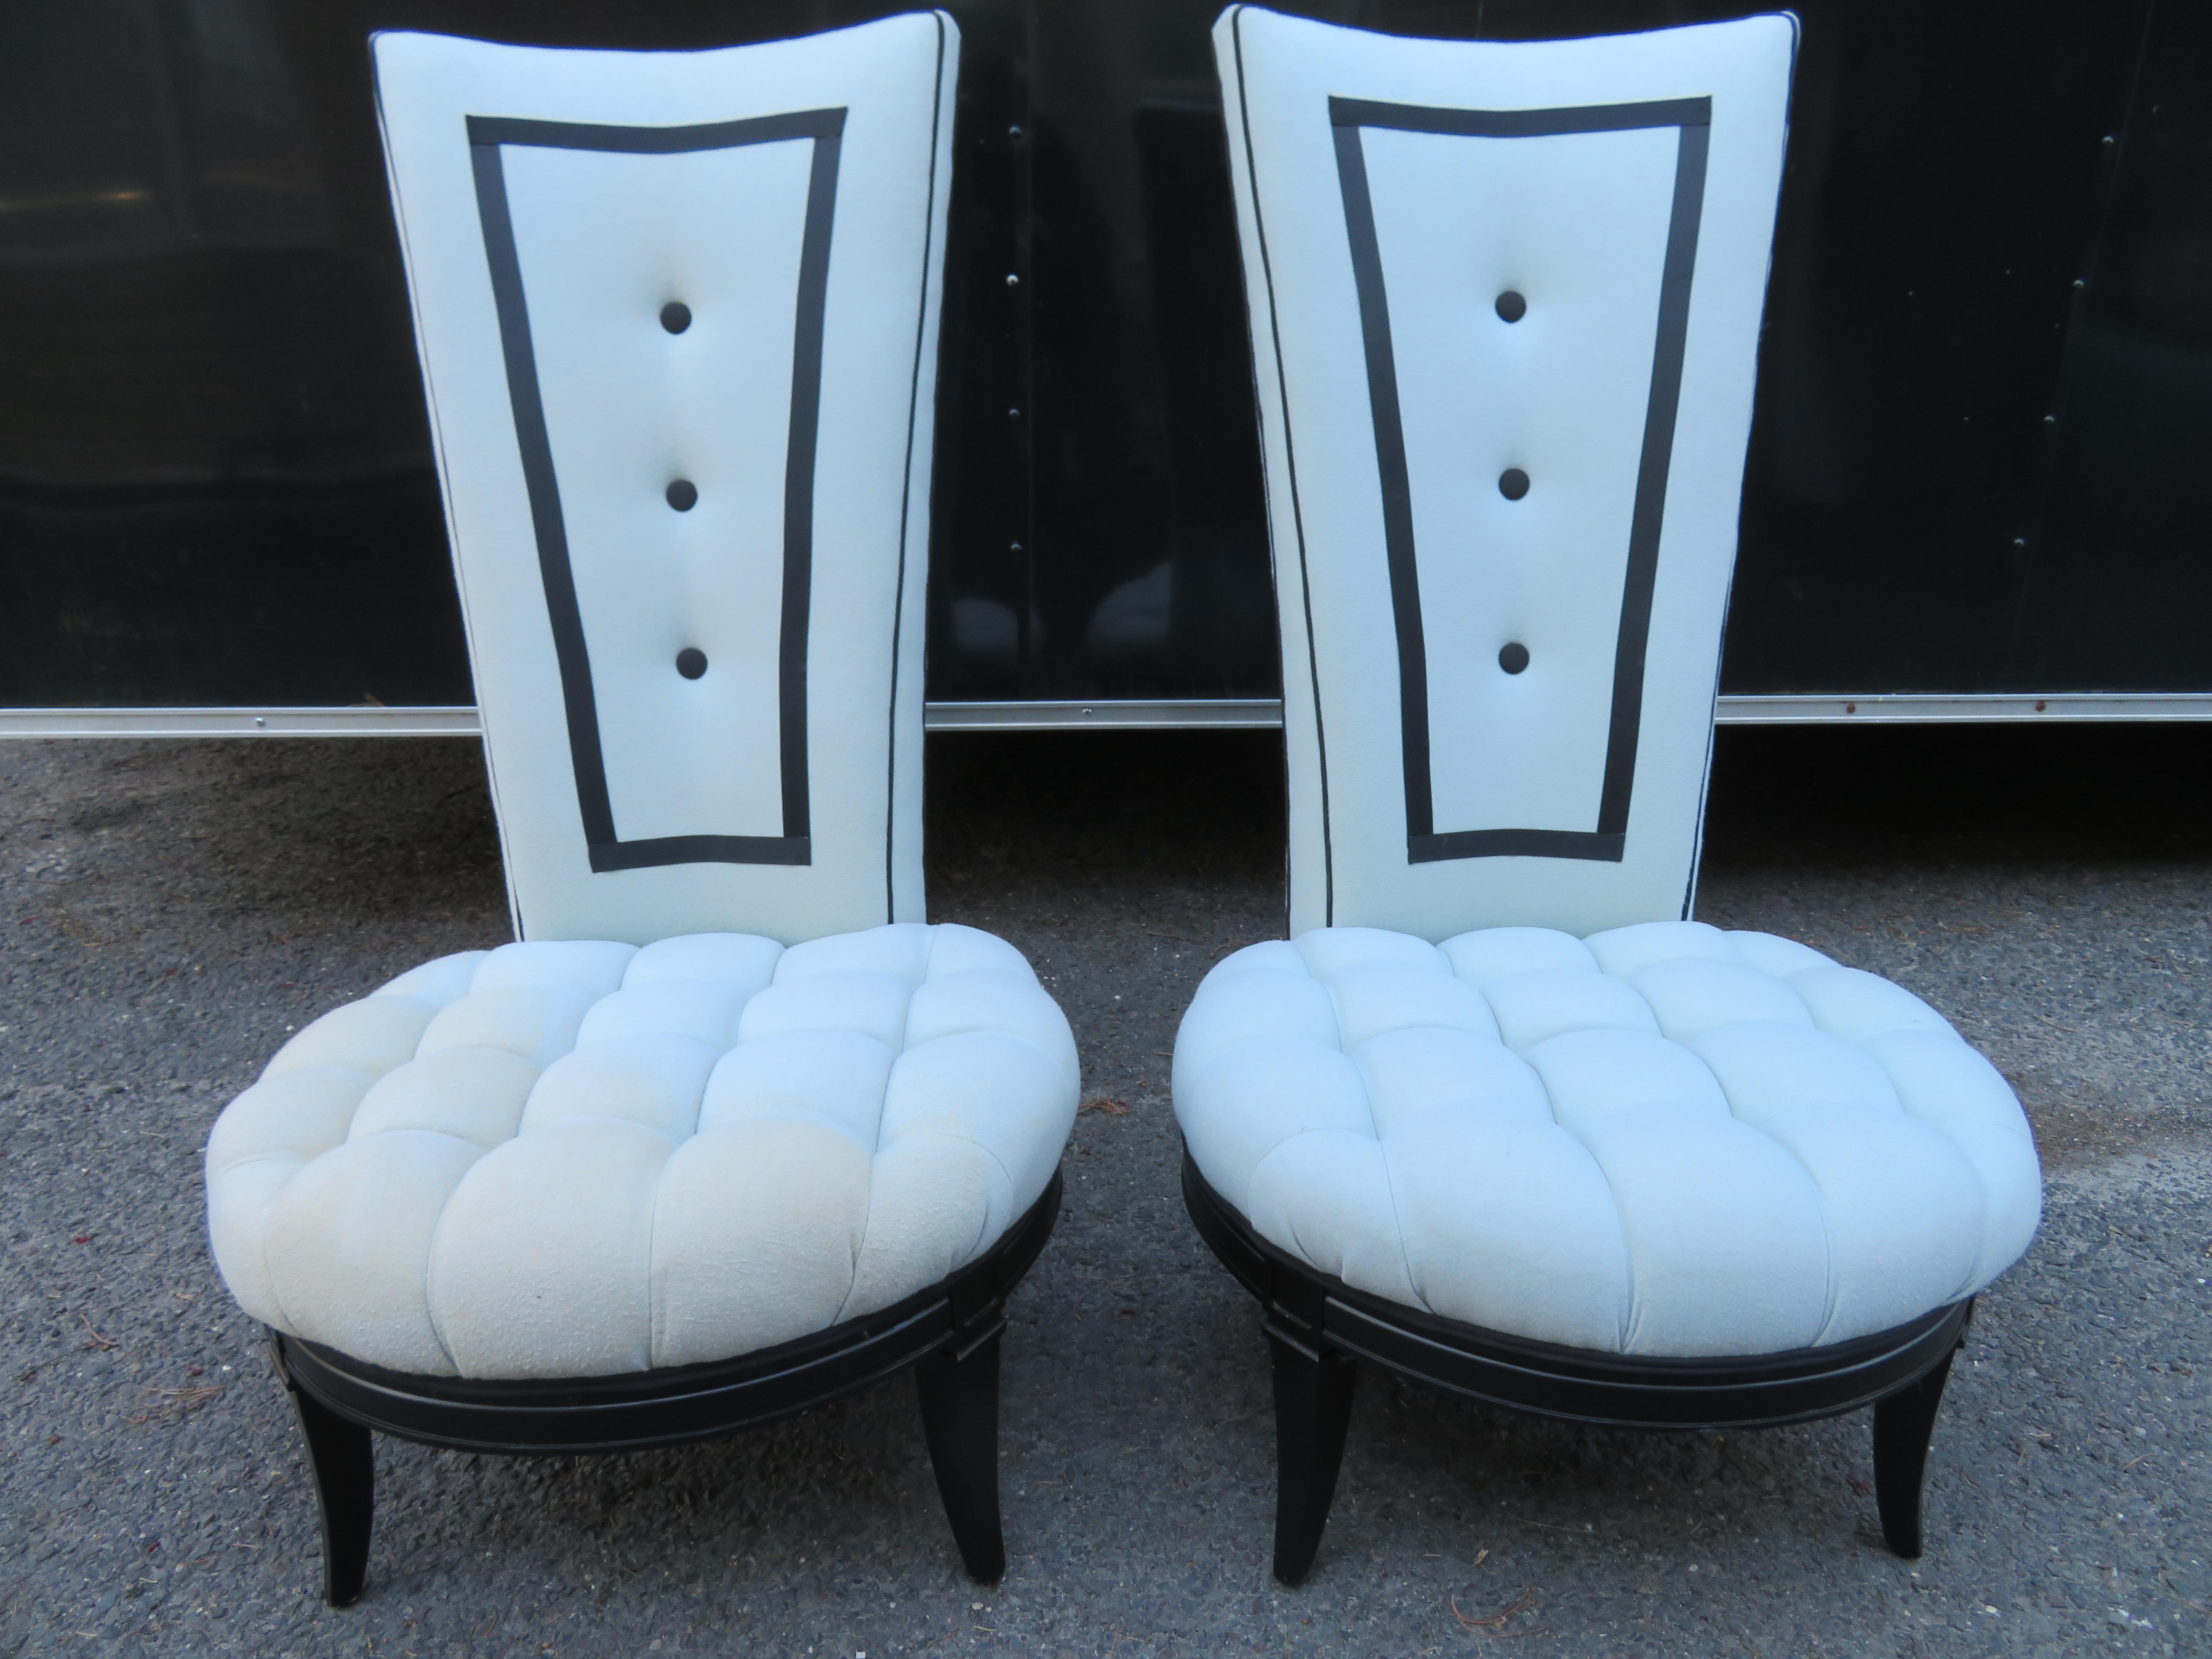 Hübsches Paar Smoking-Stil hohe Rückenlehne Pantoffelstühle mit herrlichen breiten getufteten Sitzen. Diese wurden vor etwa 10 Jahren von einem hochwertigen Designer neu gepolstert, und die Rahmen wurden schwarz lackiert. Ein Stuhl weist stärkere